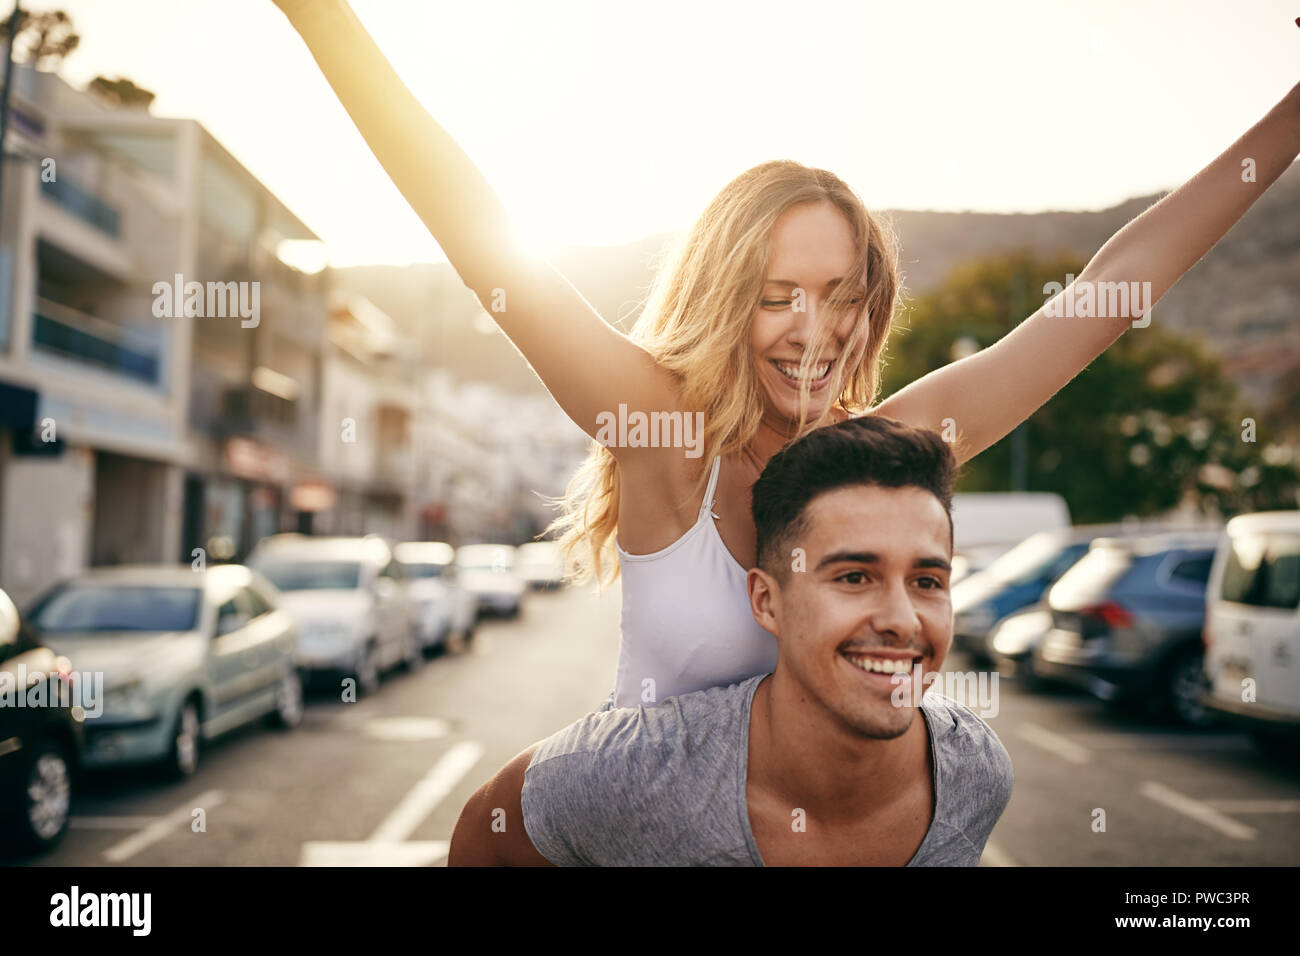 Laughing joven con sus brazos levantados siendo transportada sobre los hombros de su novio mientras se divierten juntos en la ciudad Foto de stock